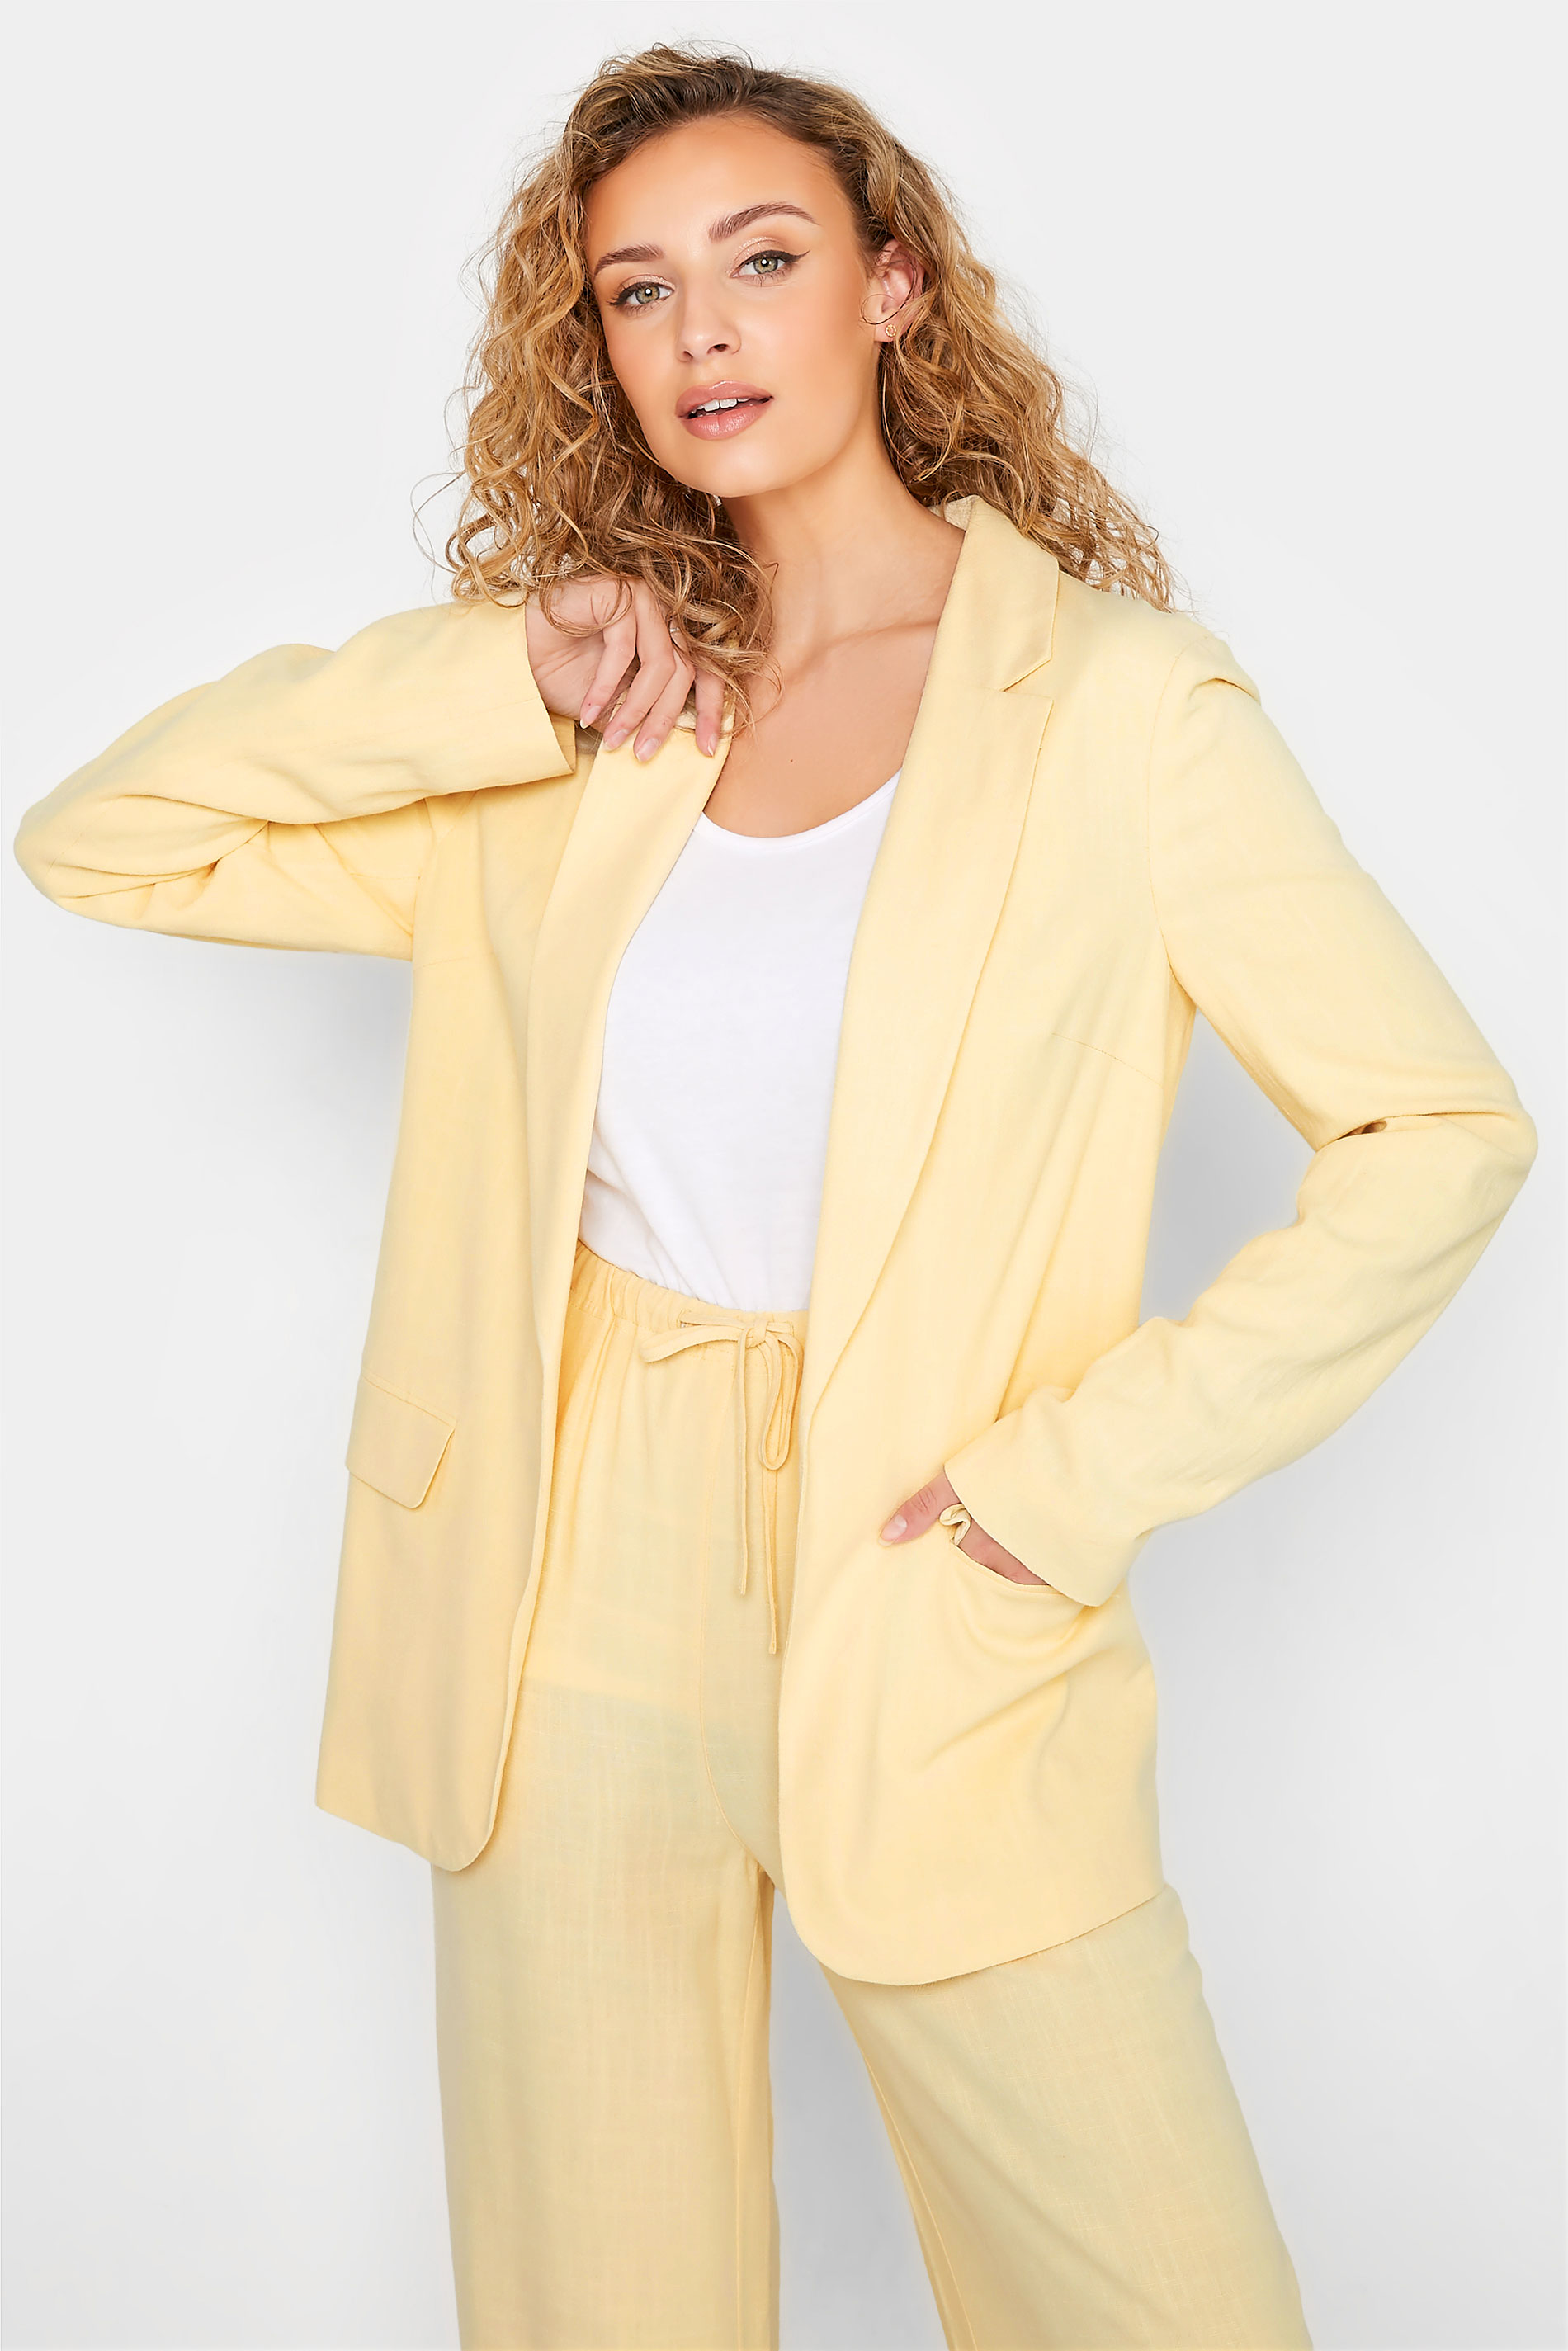 LTS Tall Women's Lemon Yellow Linen Blazer | Long Tall Sally  1